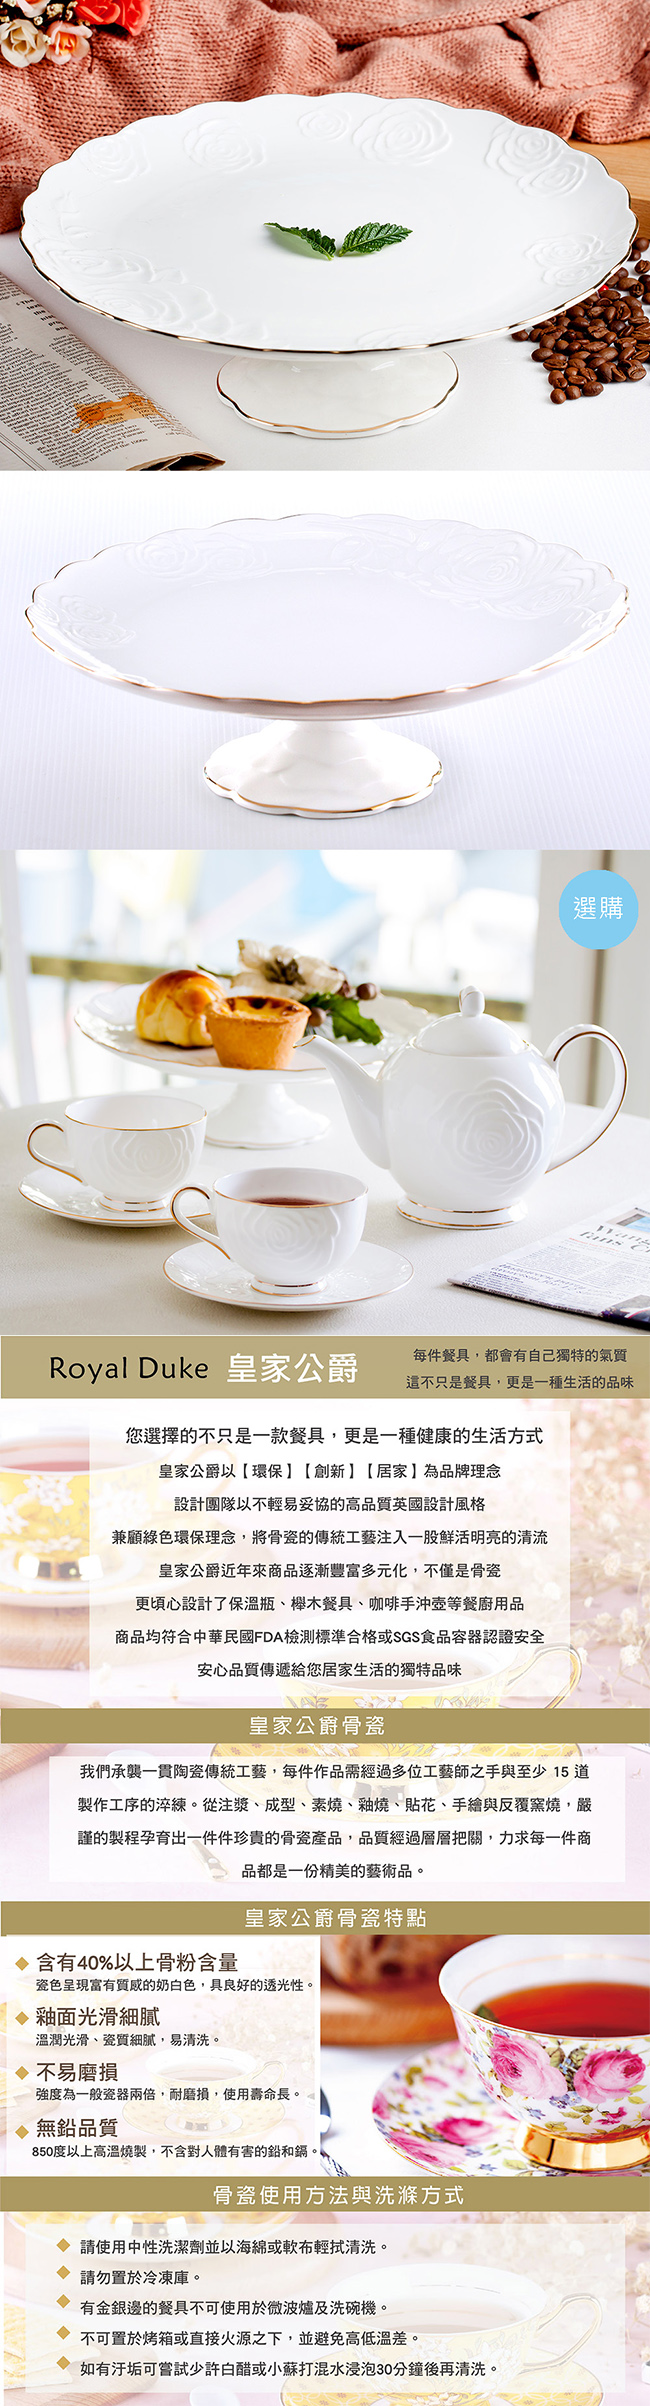 Royal Duke 典藏玫瑰高腳水果缽/點心蛋糕盤(典雅英式風格)